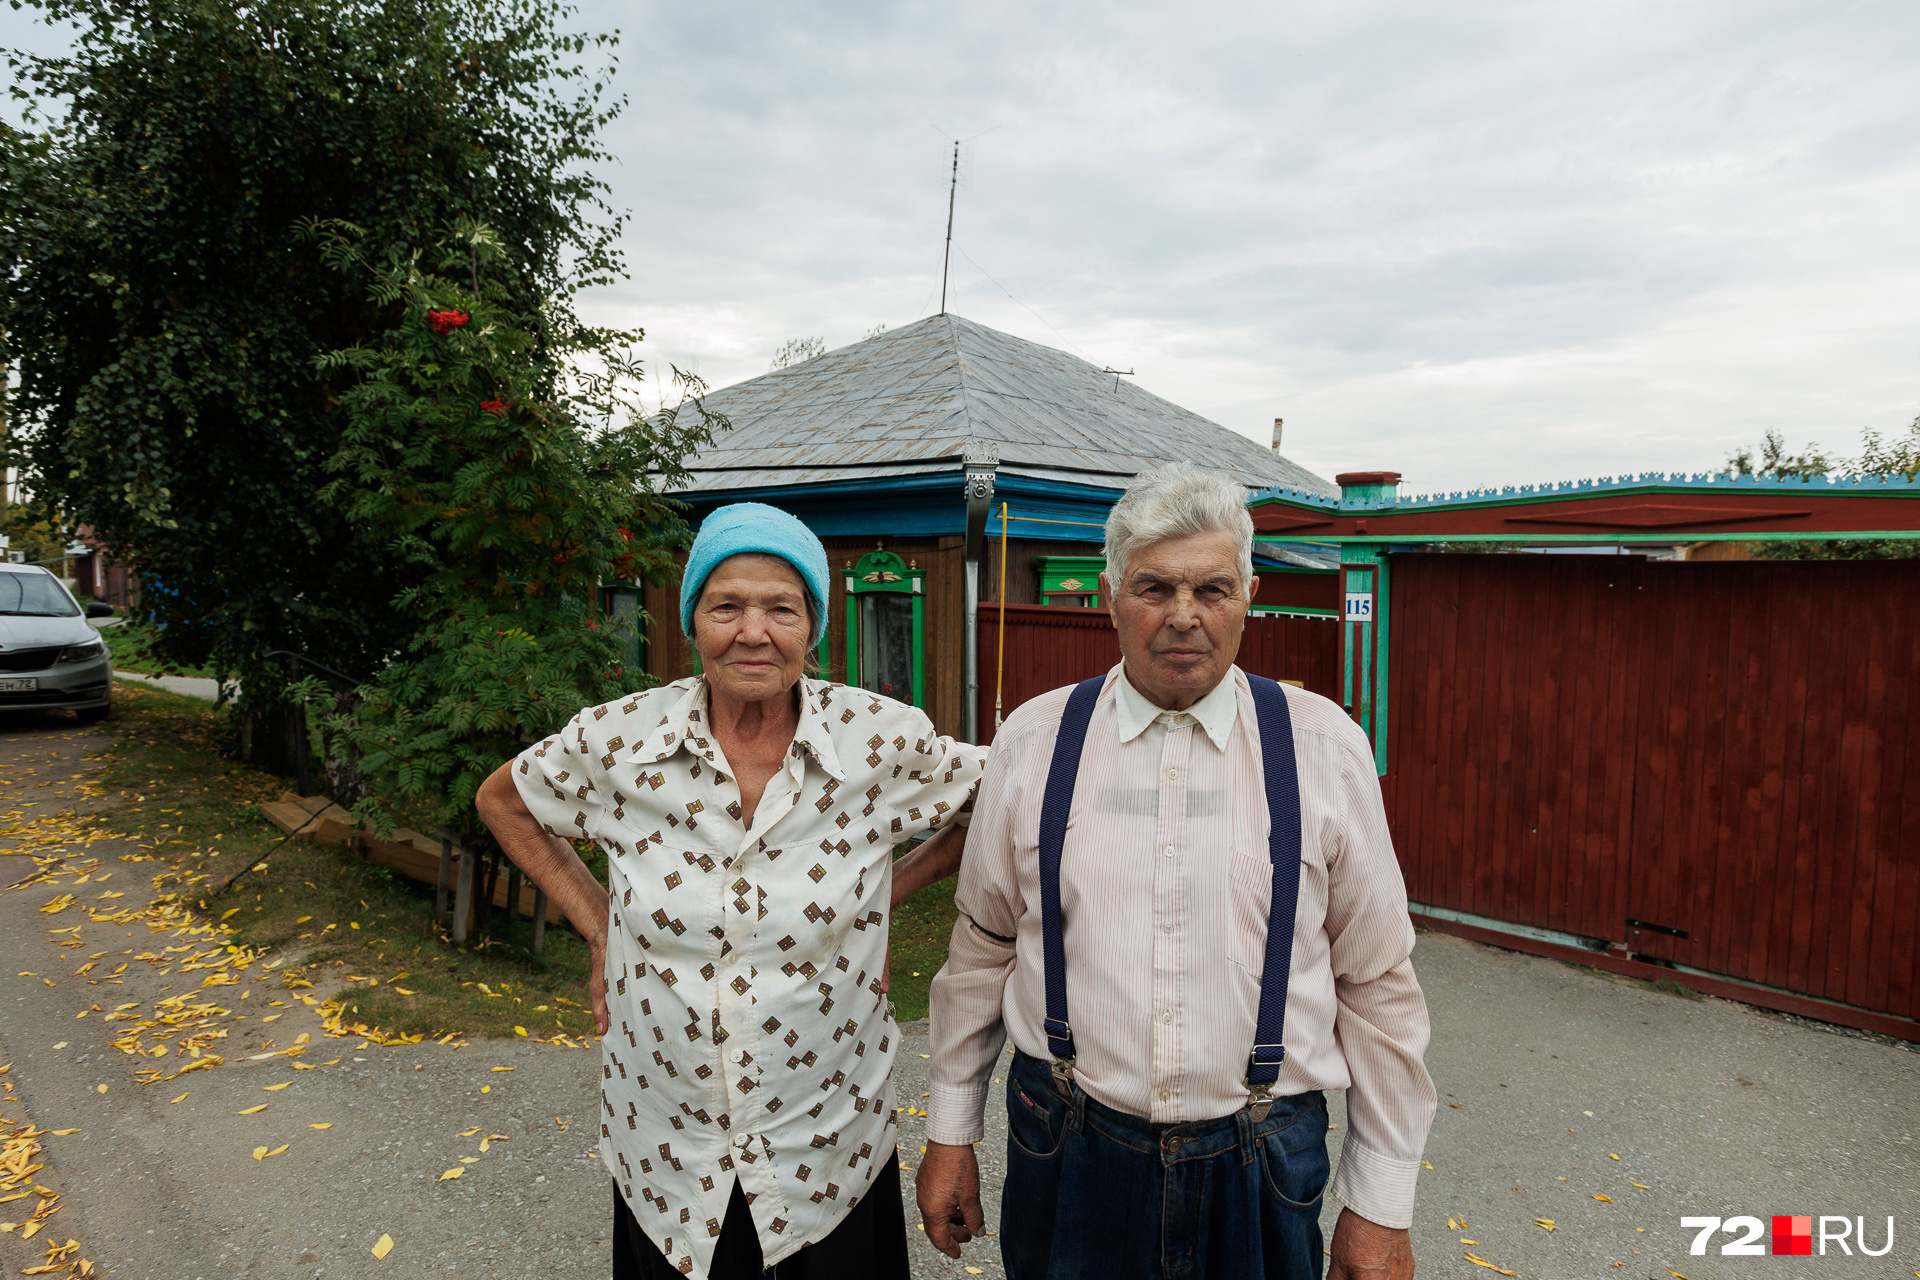 Зинаида и Григорий в браке больше 65 лет, из которых 50 живут в этом доме. Пенсионер всё сделал по дому сам, поддерживал его, ремонтировал, строил баню. Переезжать в квартиру категорически не хочет